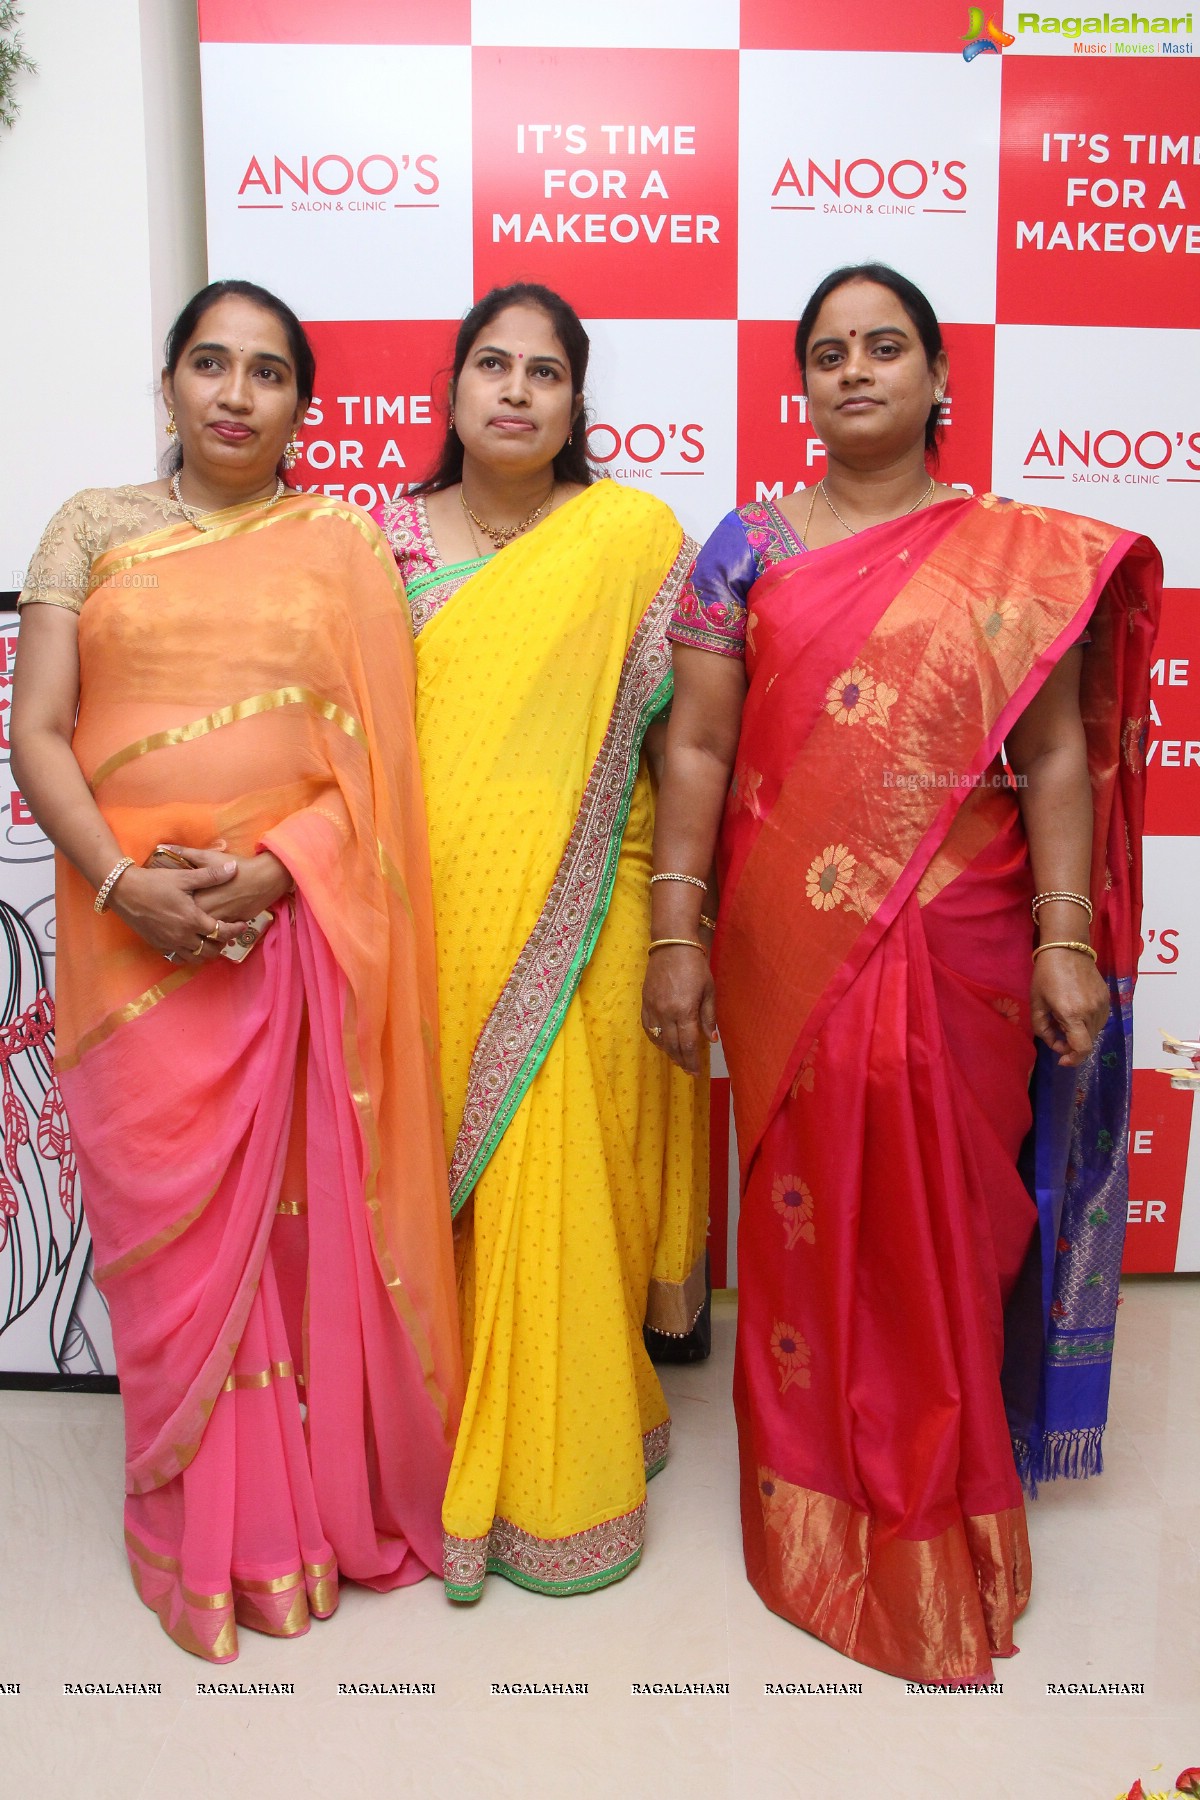 Dhanya Balakrishna launches Anoos Salon & Clinic at Kompally, Hyderabad